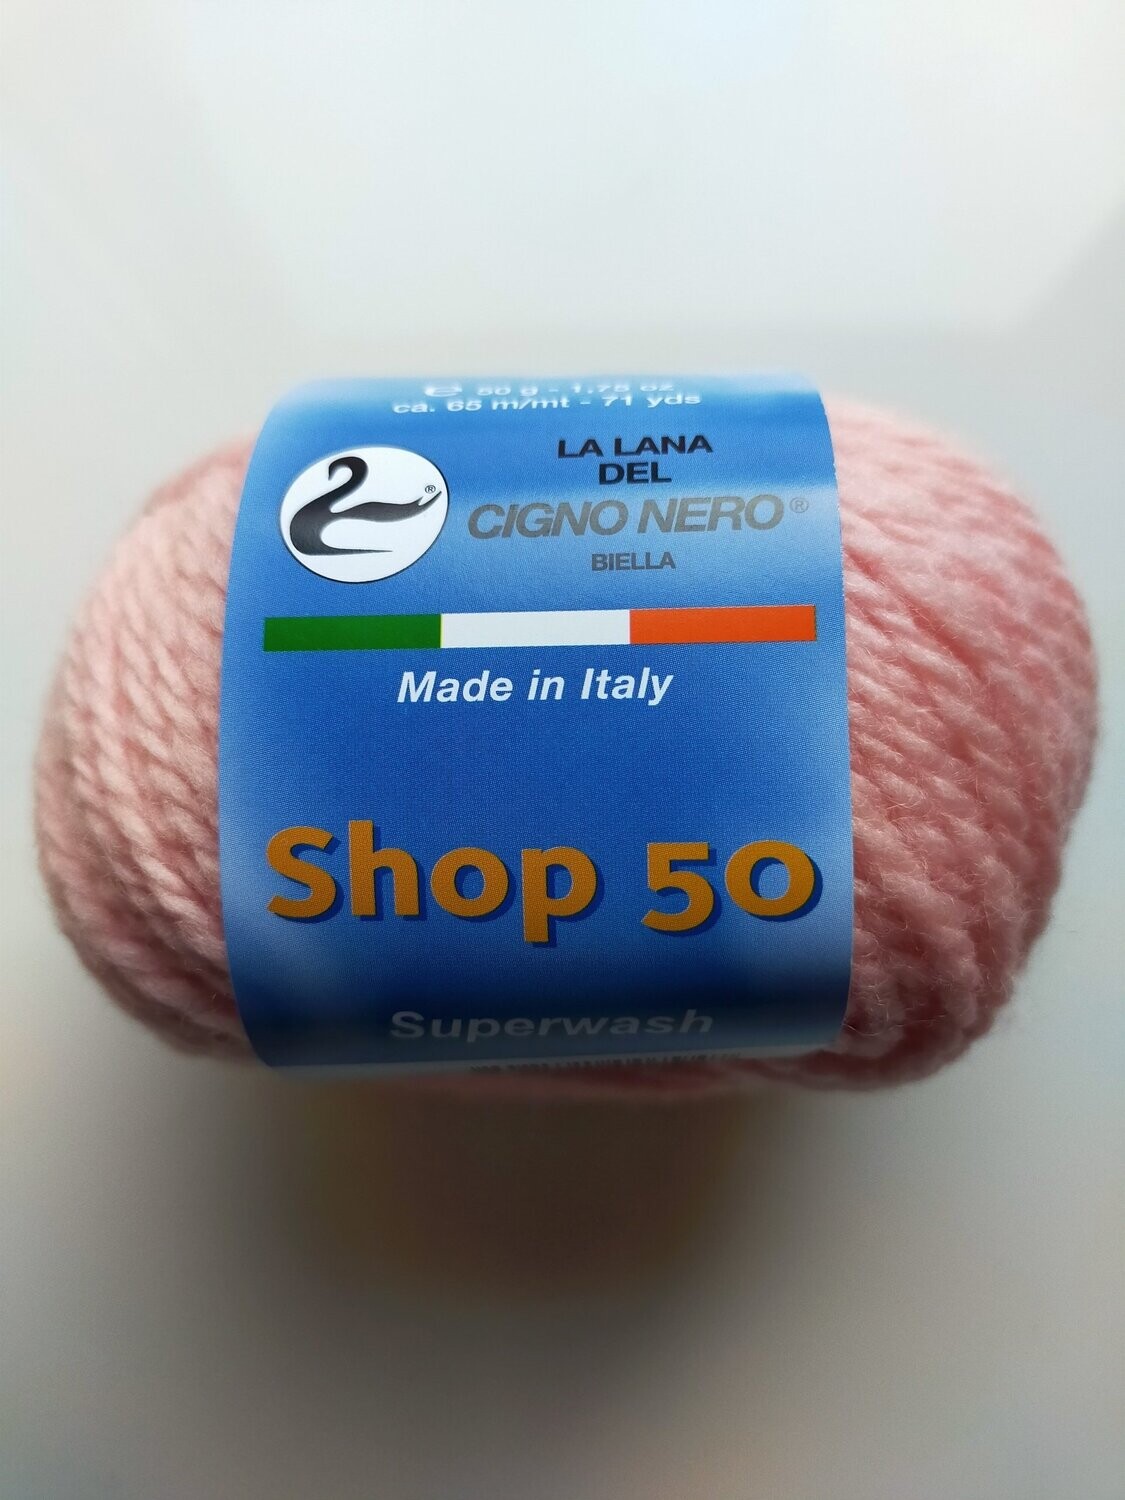 Shop 50